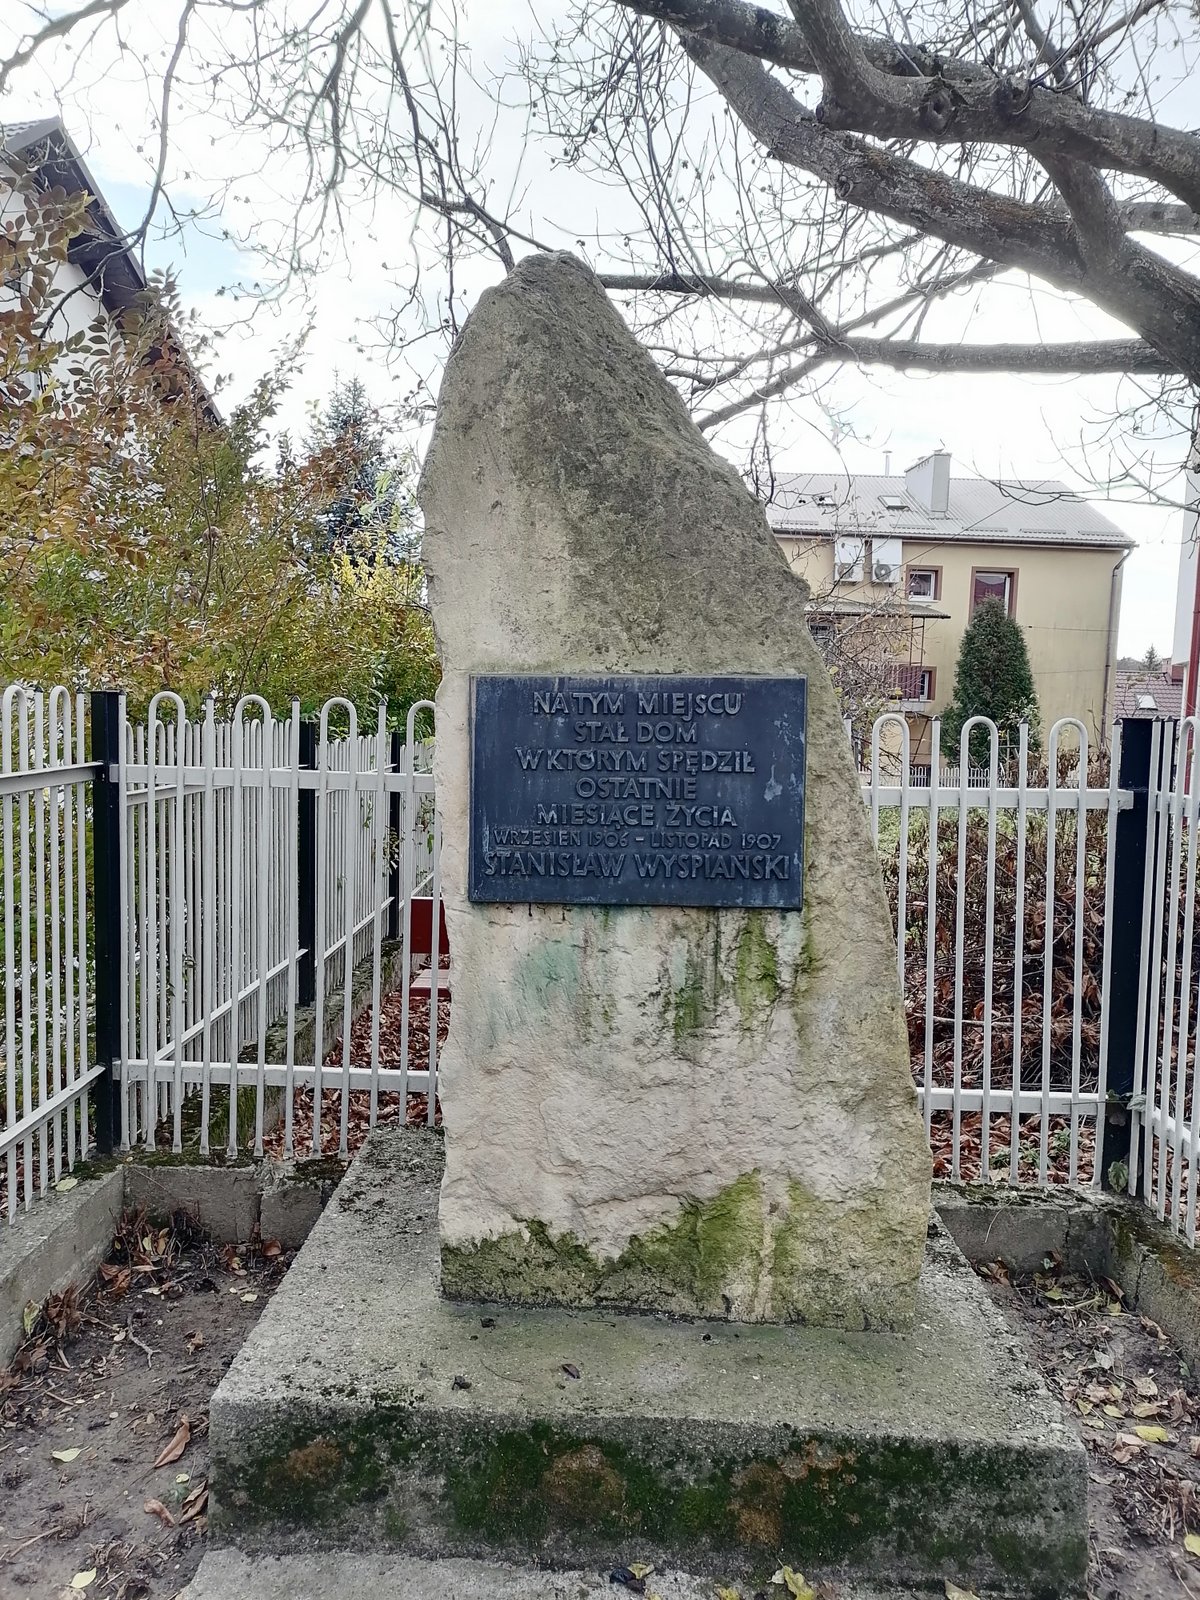 Kamień upamiętniający miejsce domu Stanisława Wyspiańskiego w Węgrzcach.